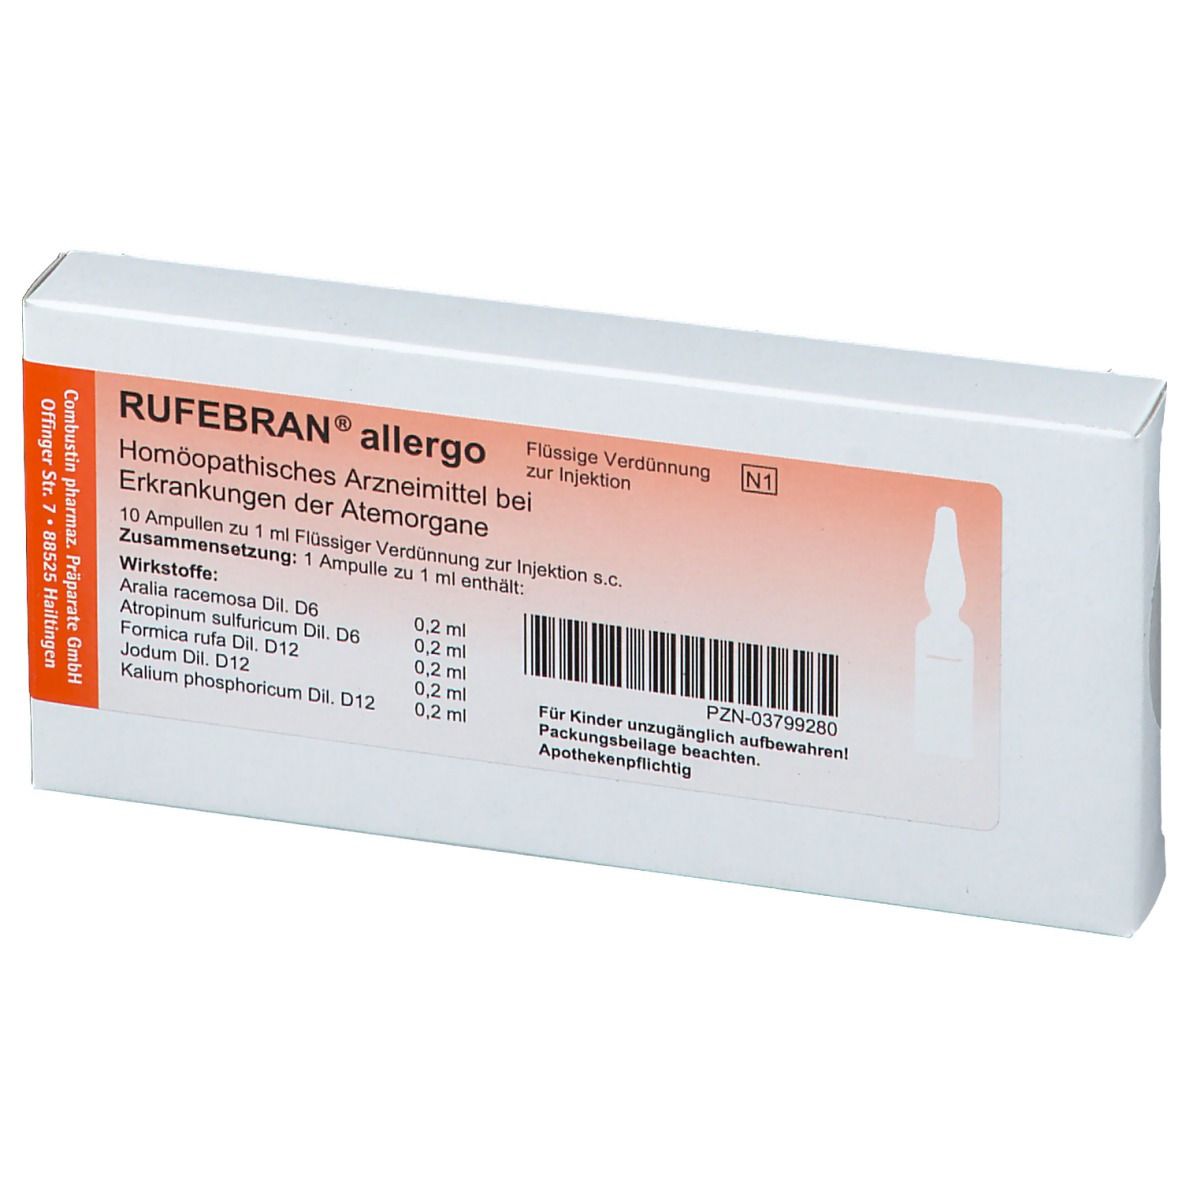 RUFEBRAN® allergo Ampullen